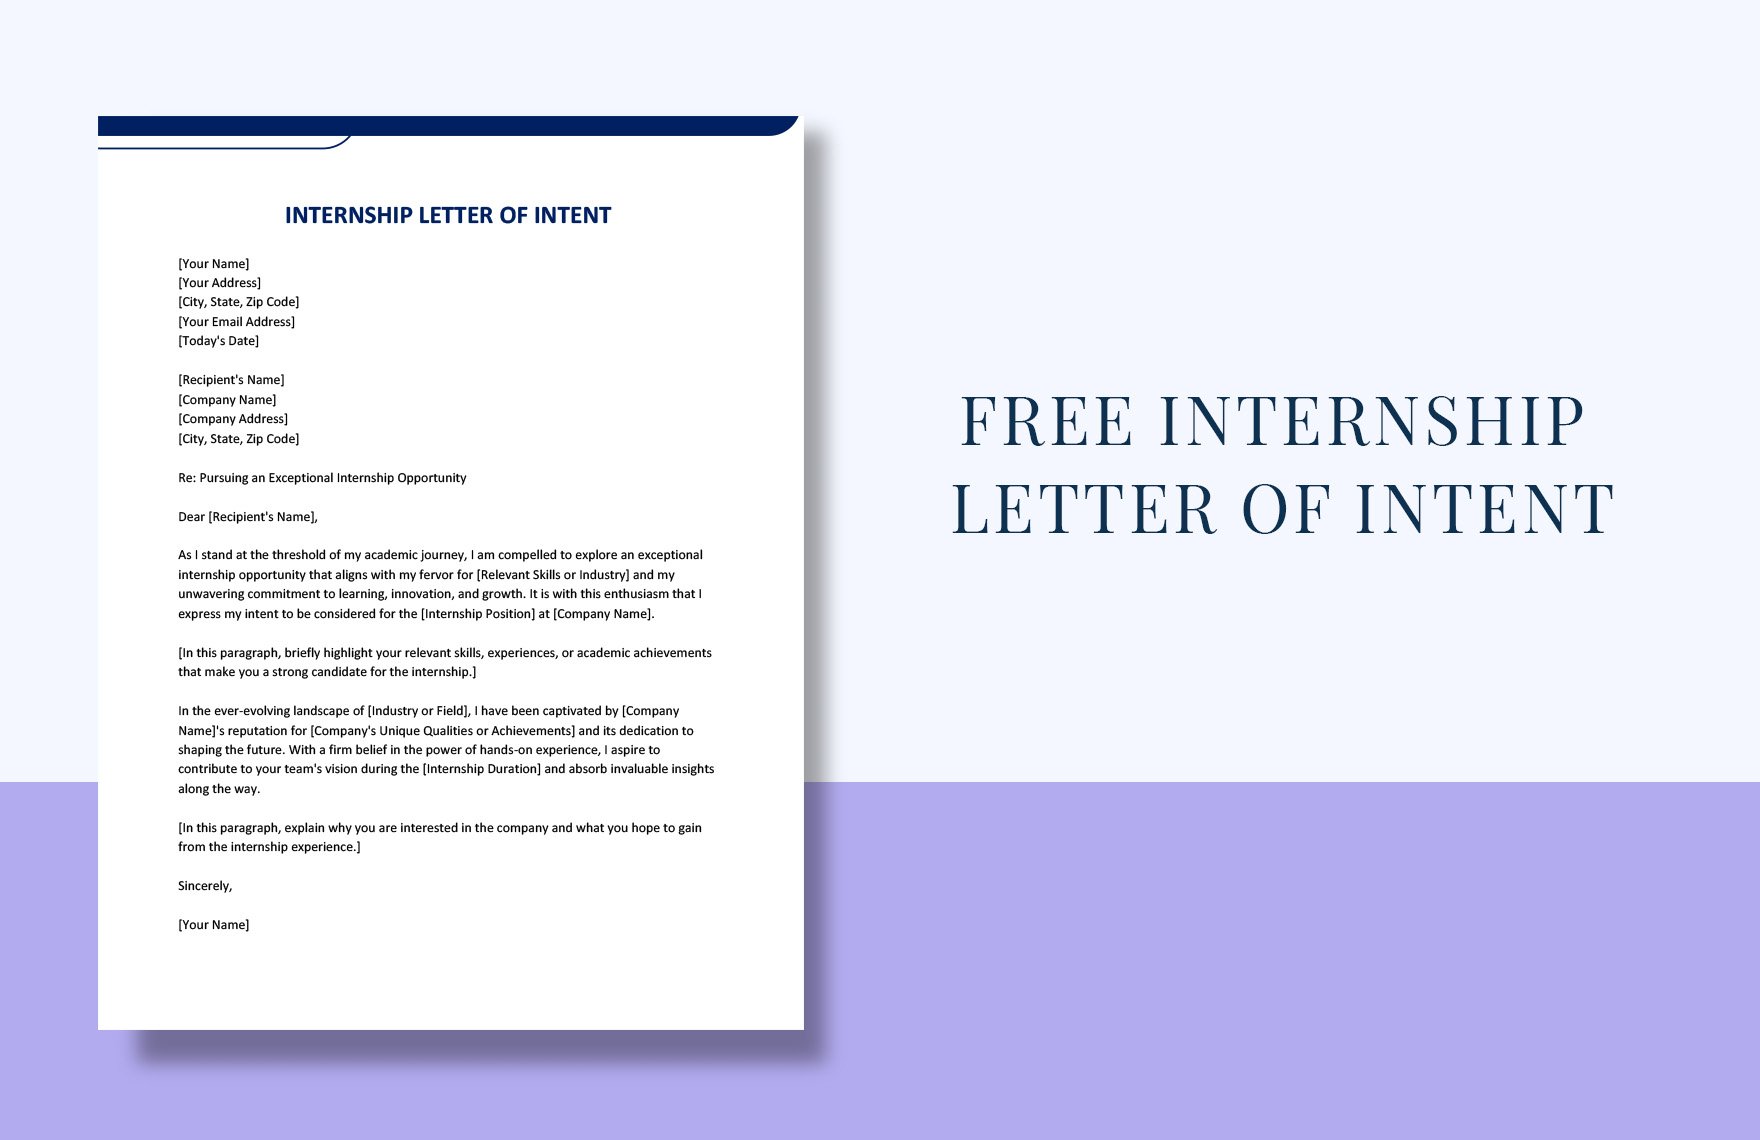 internship-letter-of-intent